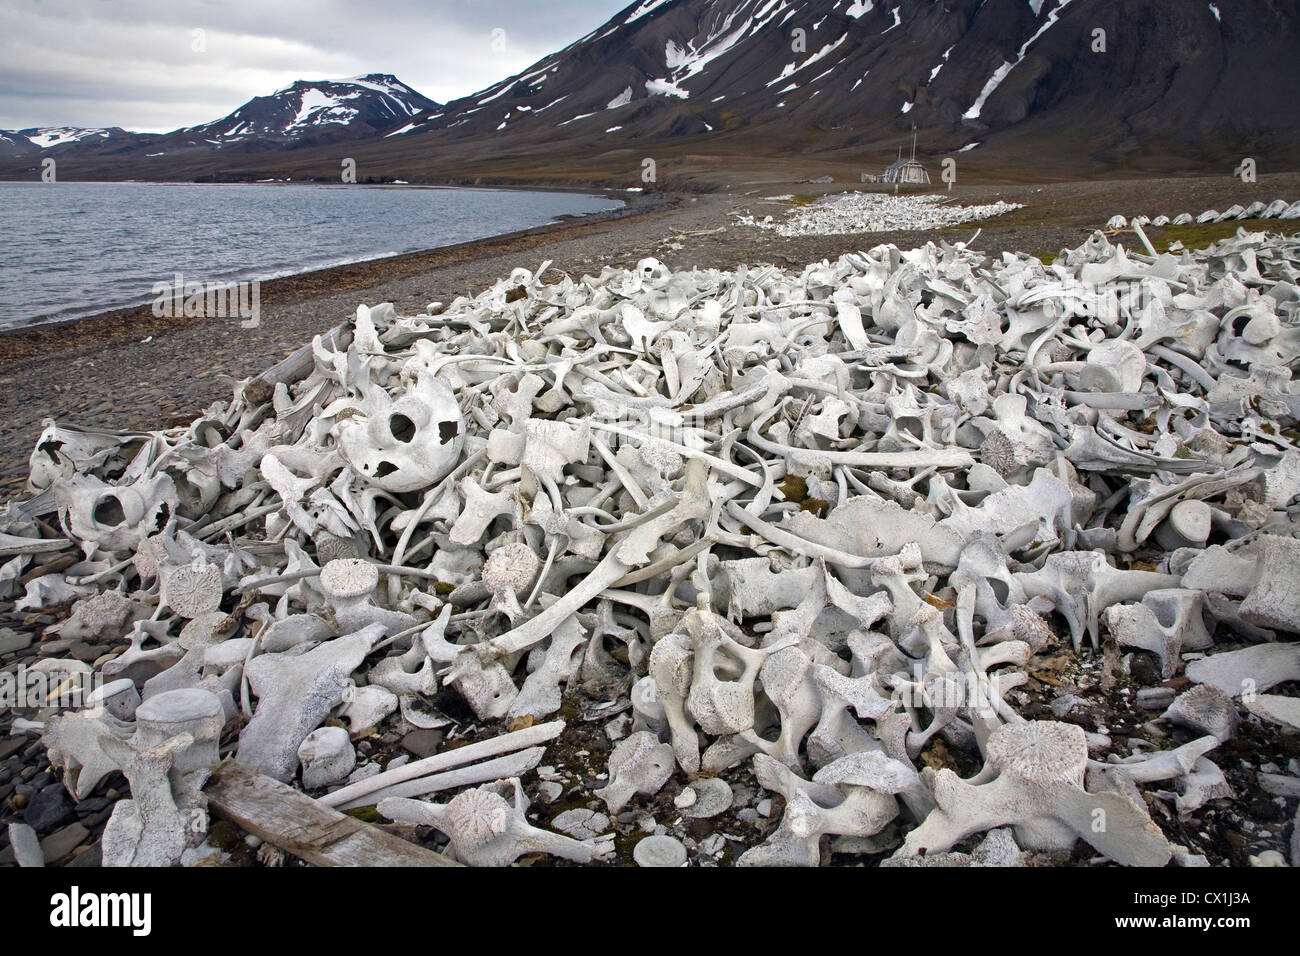 Old bleached whale bones in the Hornsund, Svalbard, Spitsbergen, Norway Stock Photo